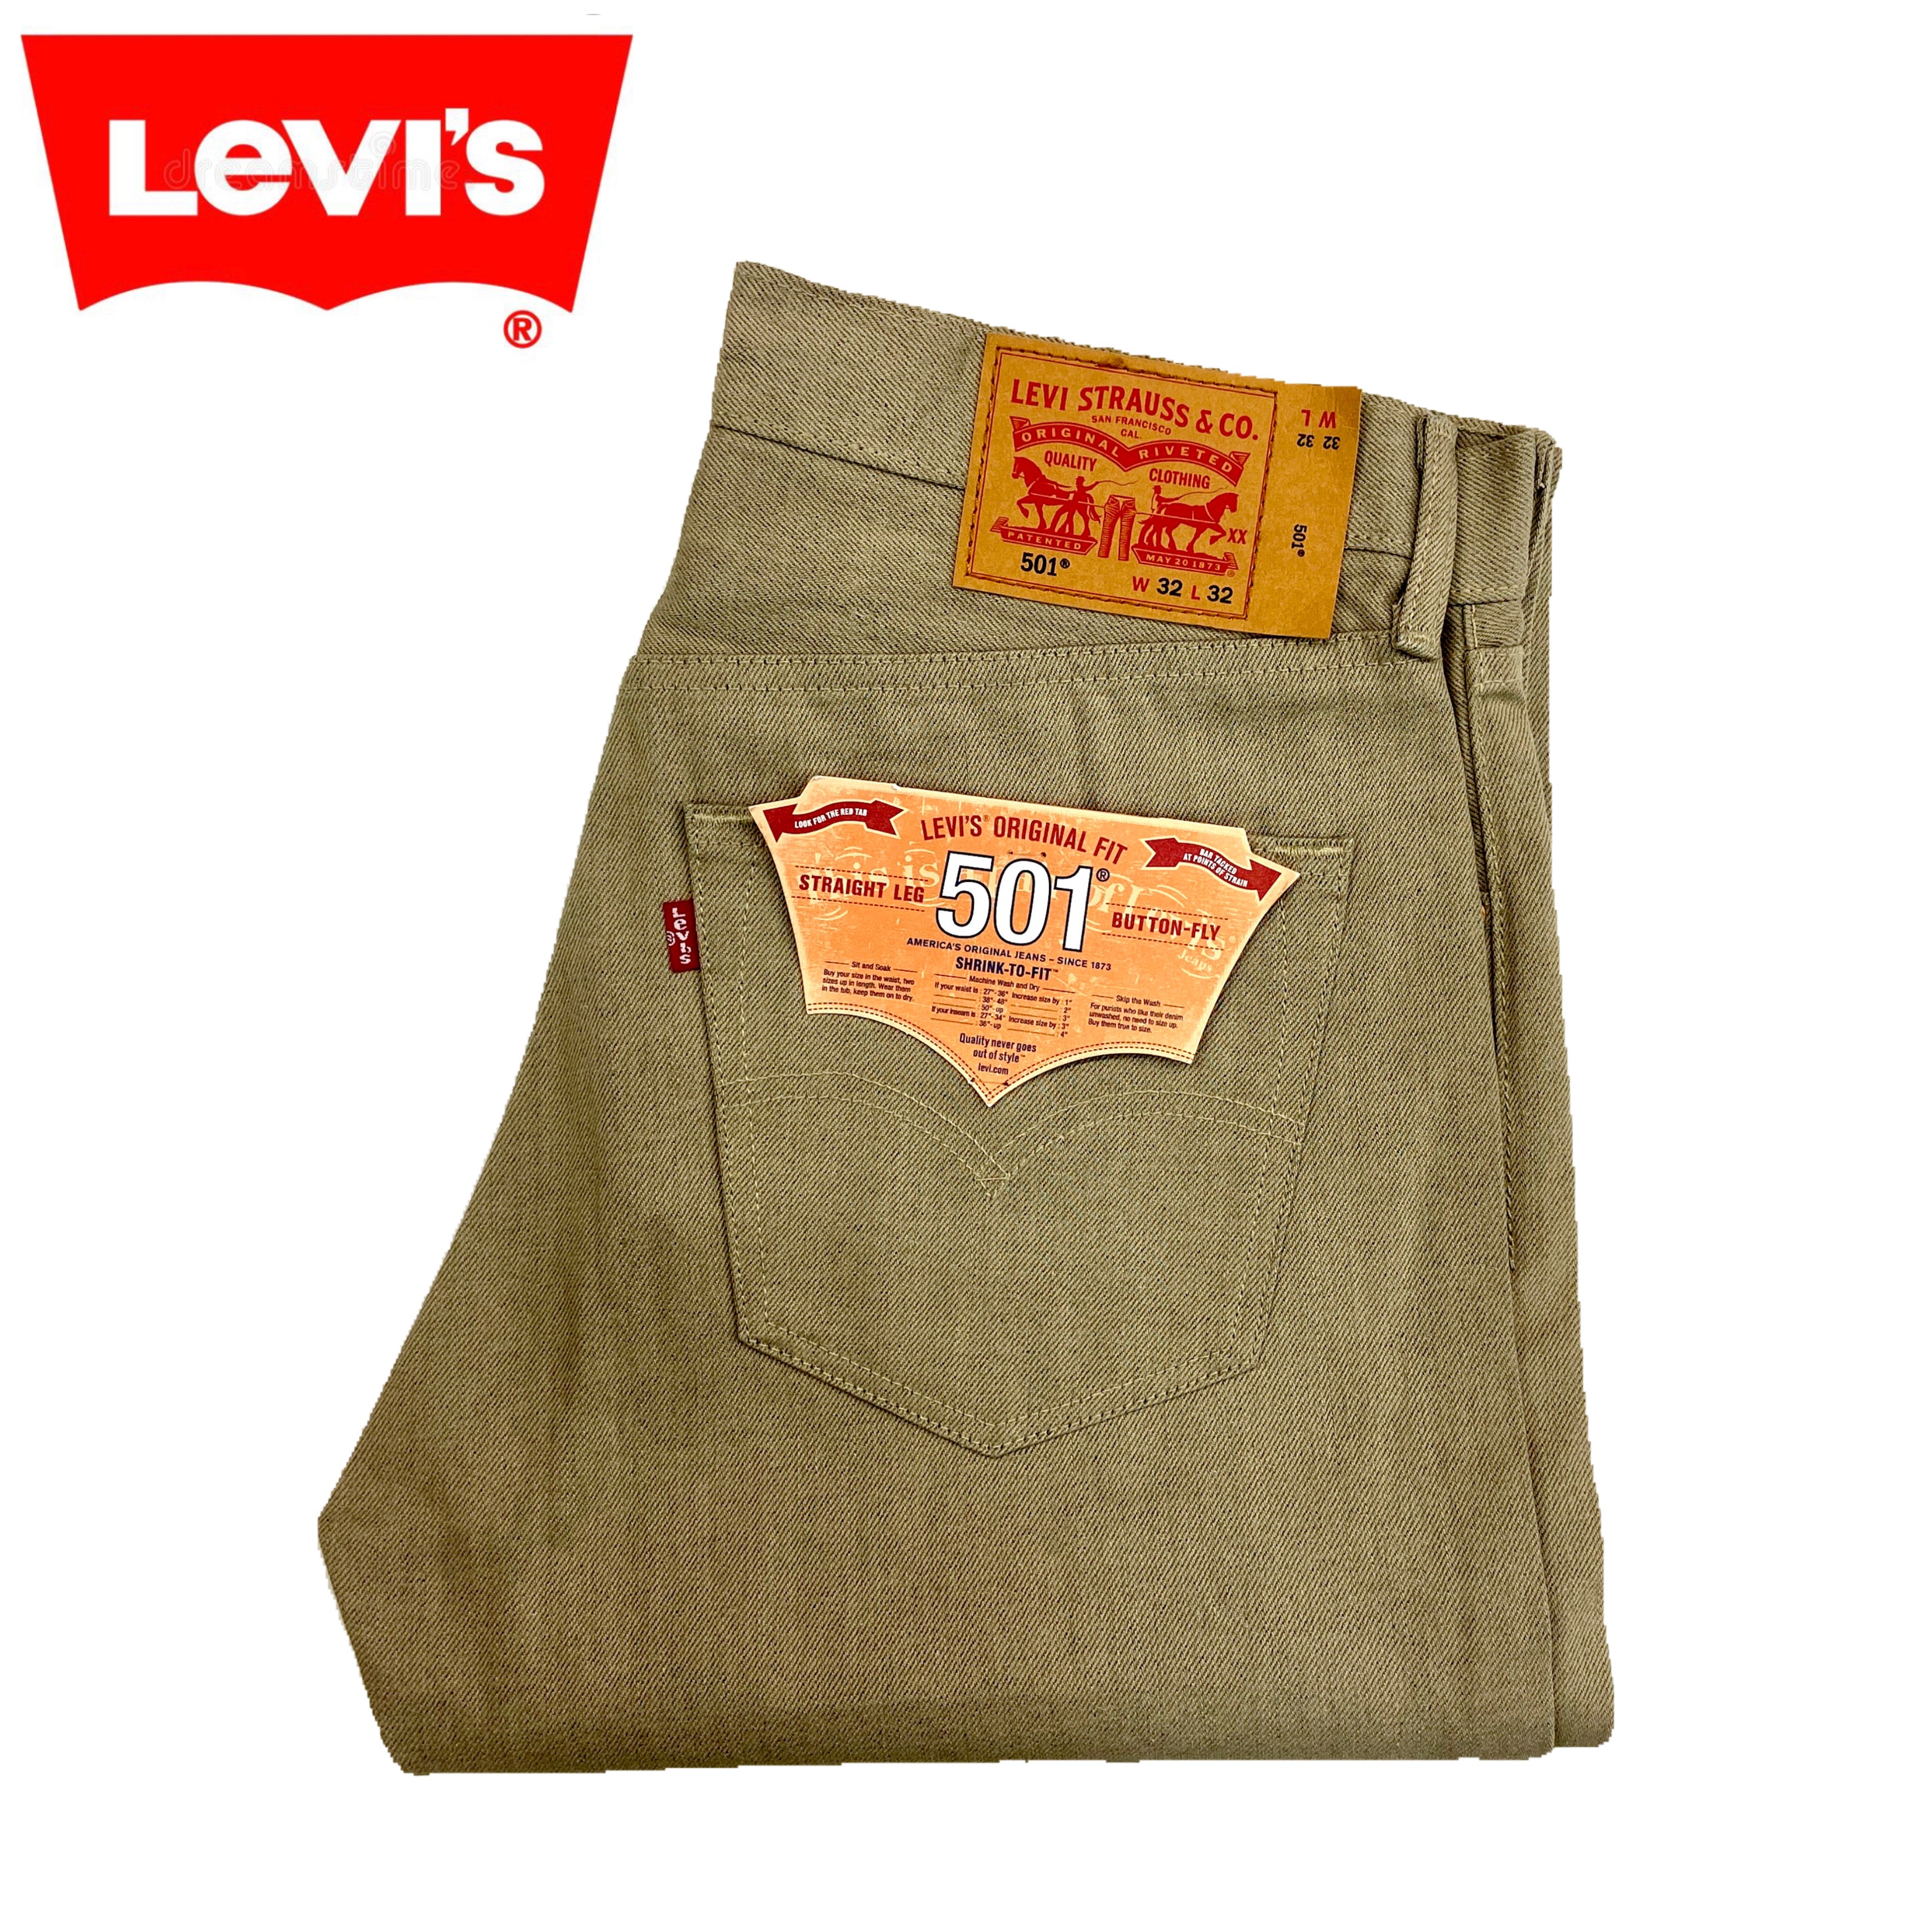 Levi's 501 Shrink-to-Fit - Khaki - 1929